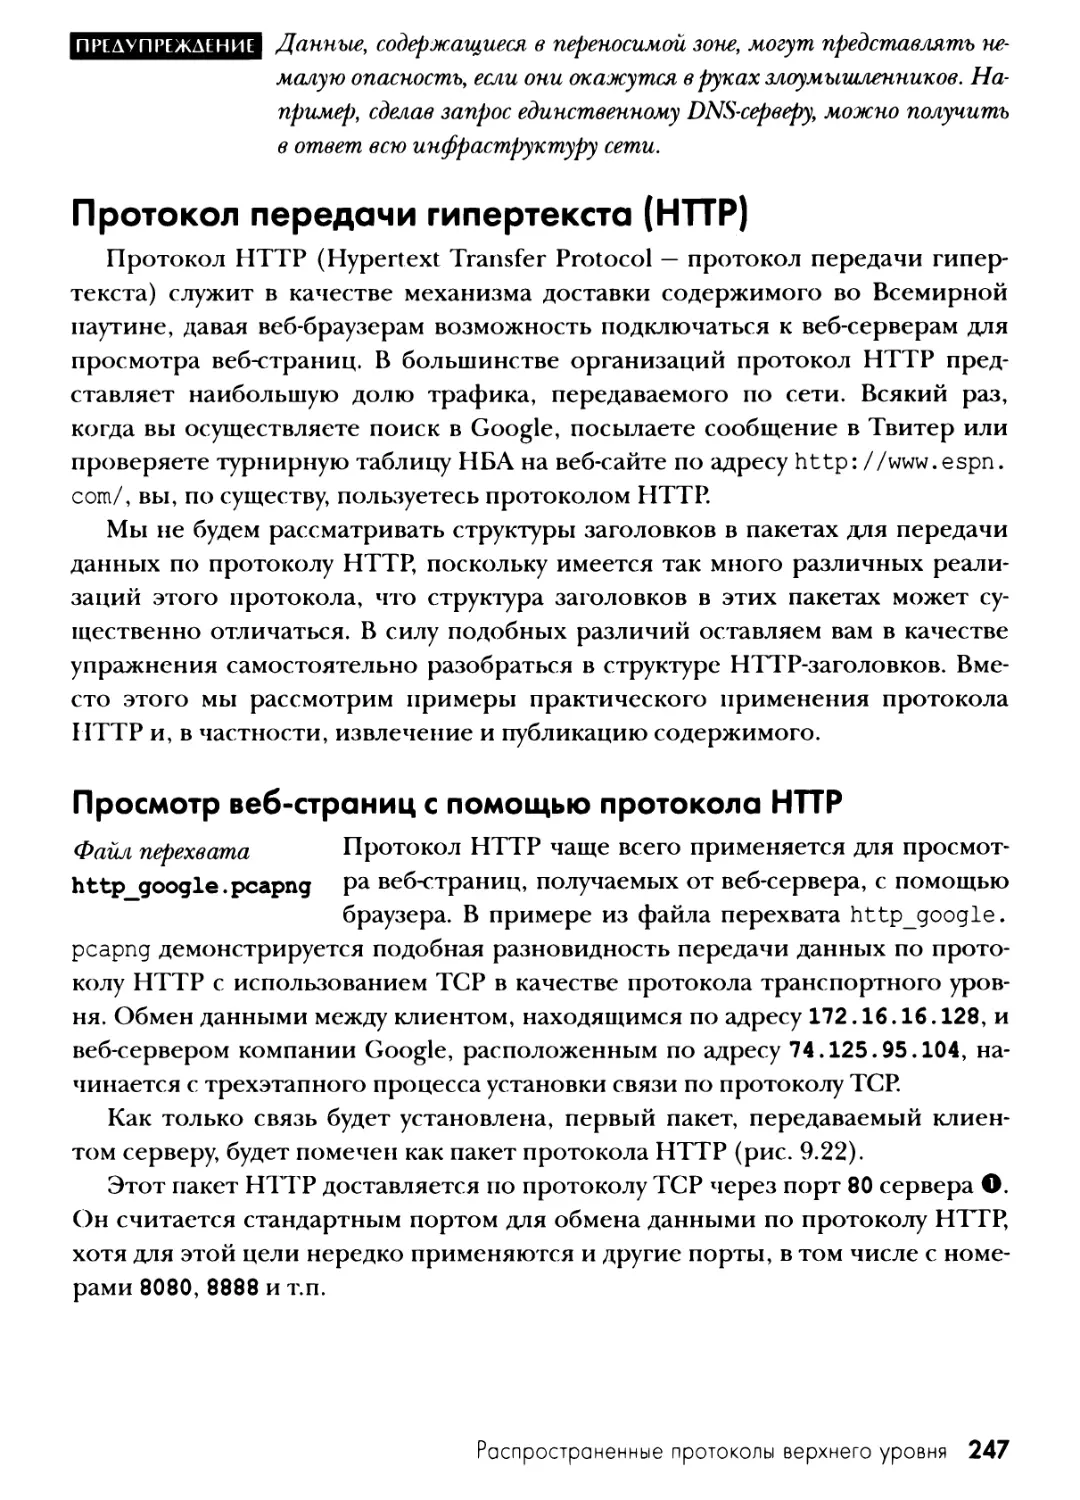 Протокол передачи гипертекста (HTTP)
Просмотр веб-страниц с помощью протокола HTTP